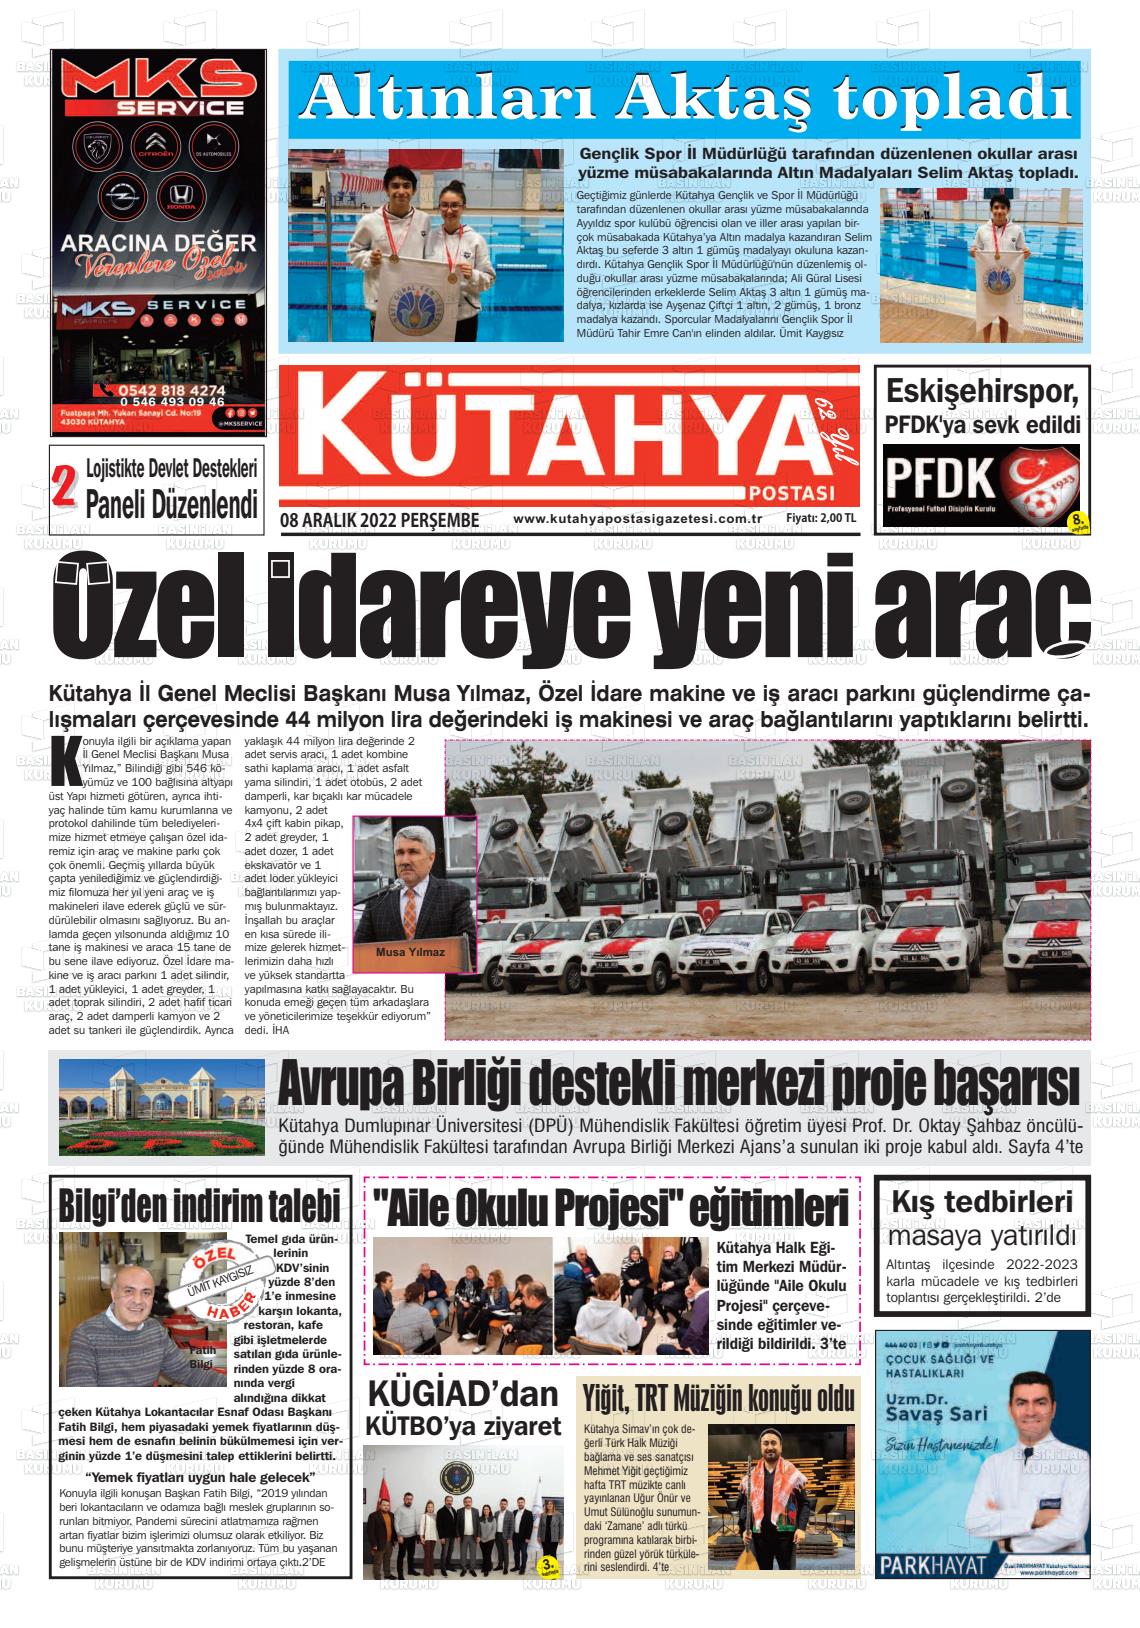 08 Aralık 2022 Kütahya Postası Gazete Manşeti